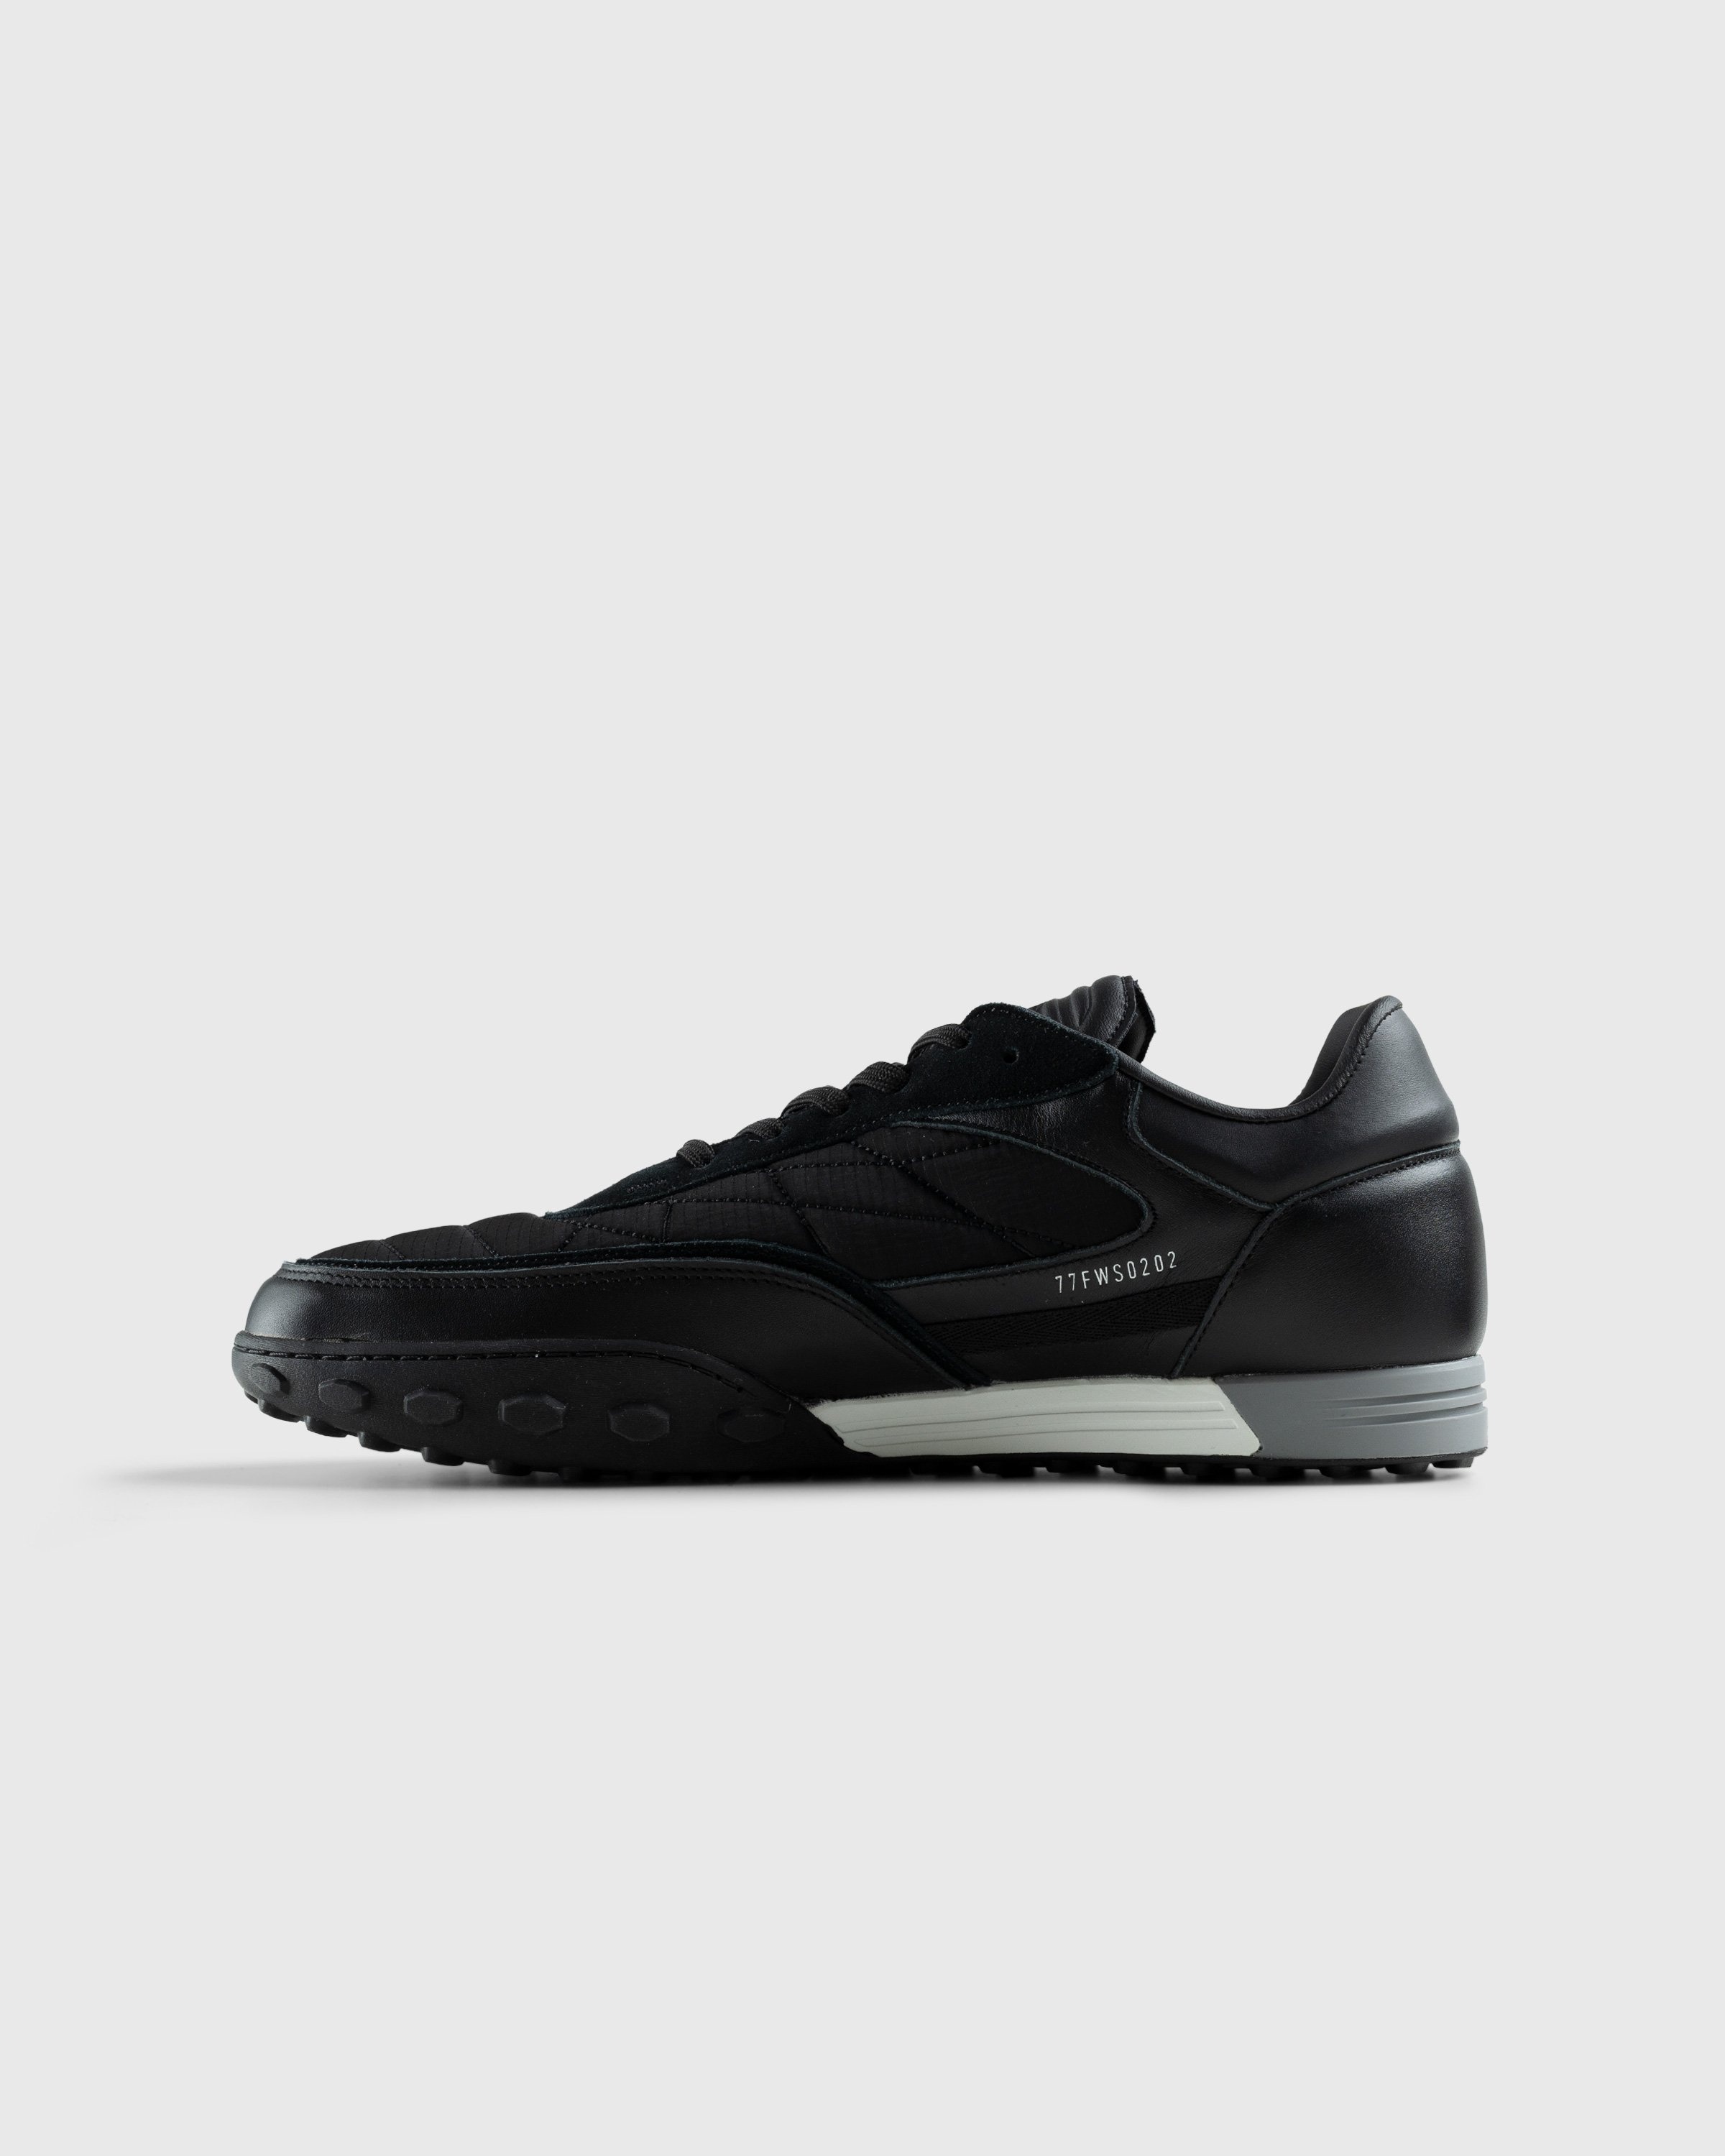 Stone Island – Football Sneaker Black - Low Top Sneakers - Black - Image 2